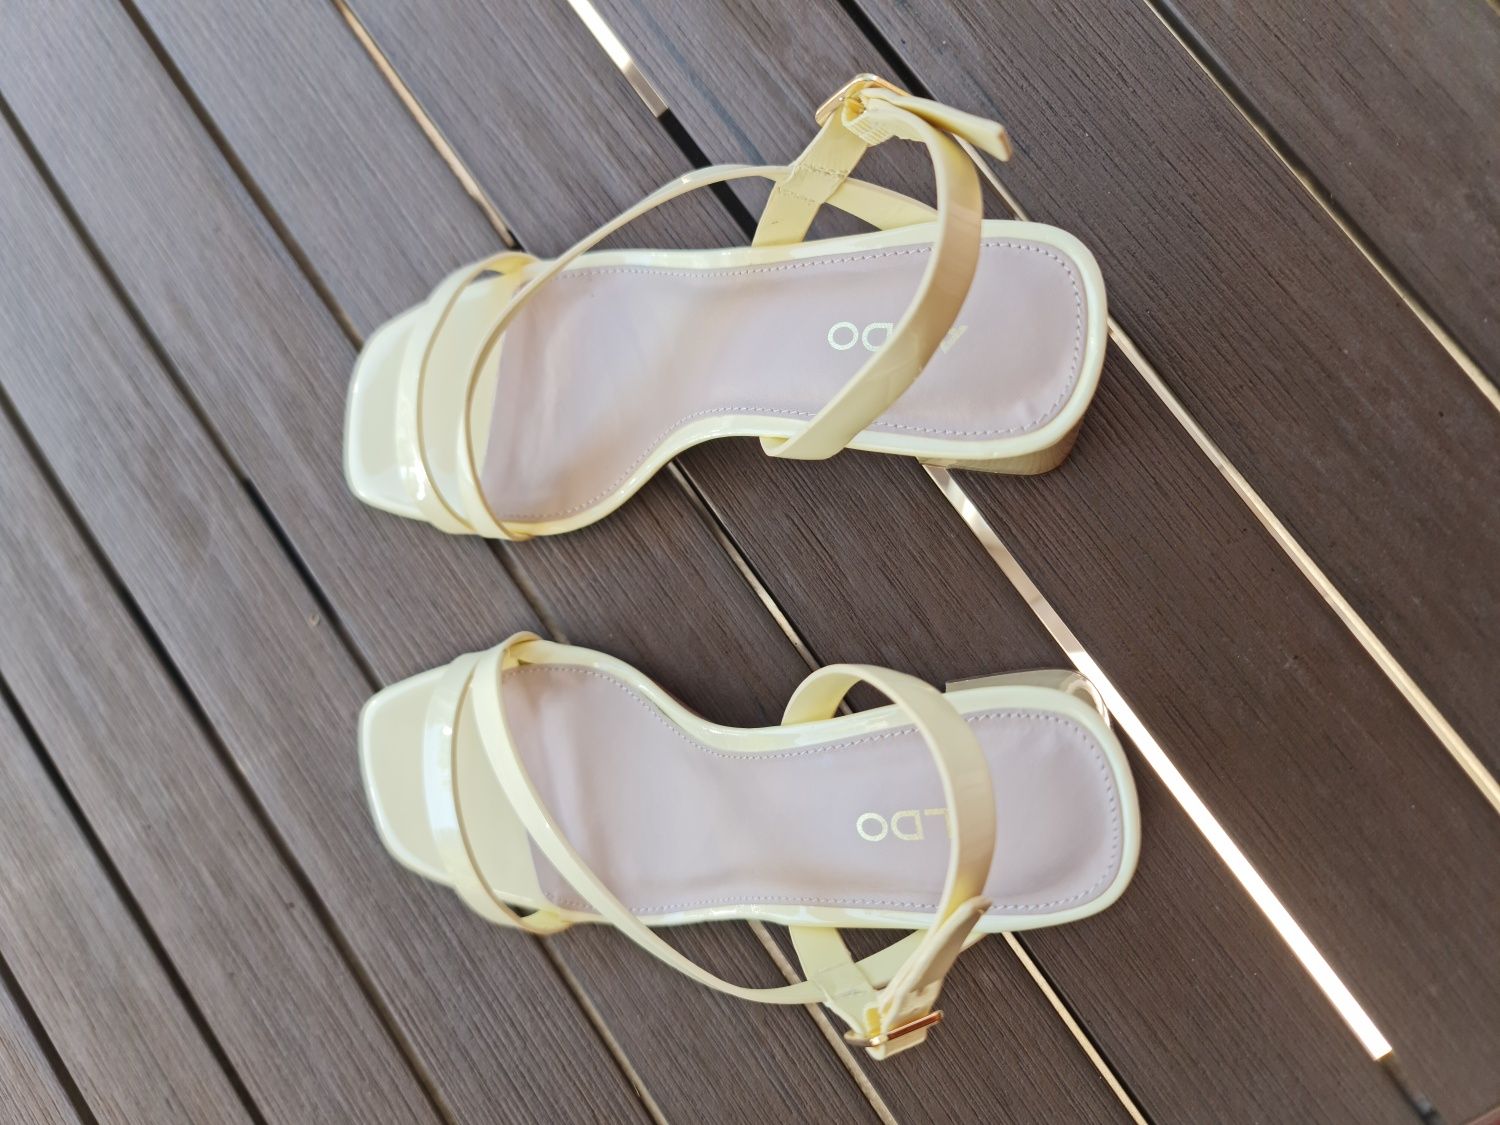 Sandálias em verniz amarelo - ALDO